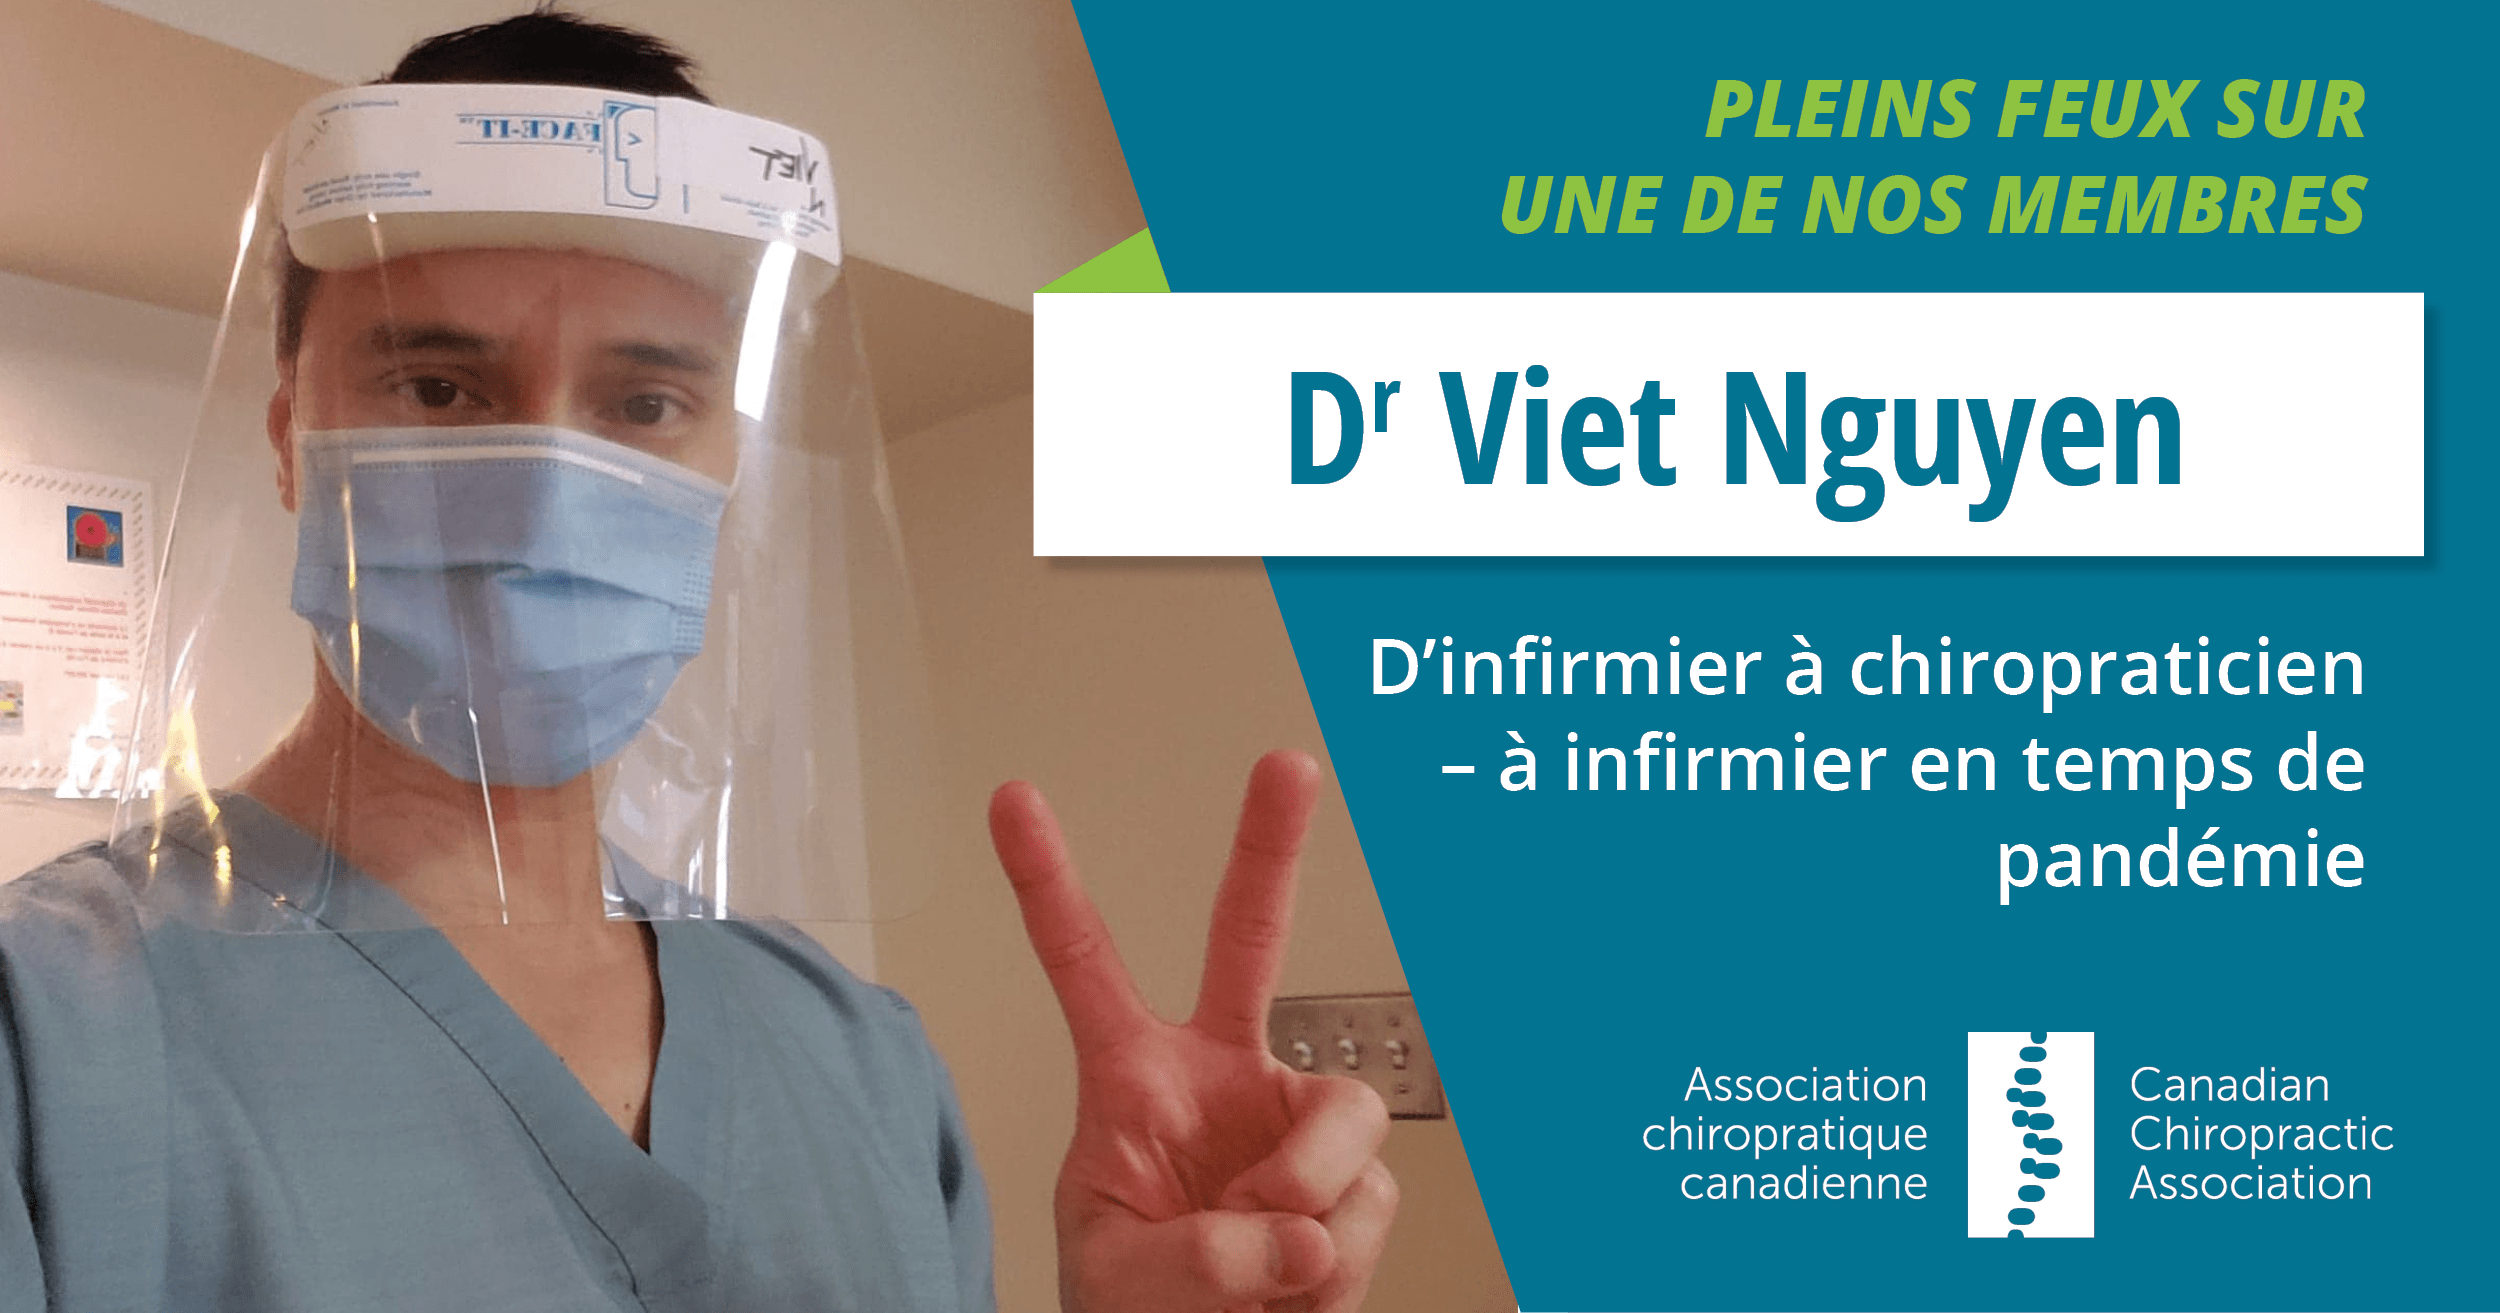 Dr. Viet Nguyen - infirmiers pendant la pandémie